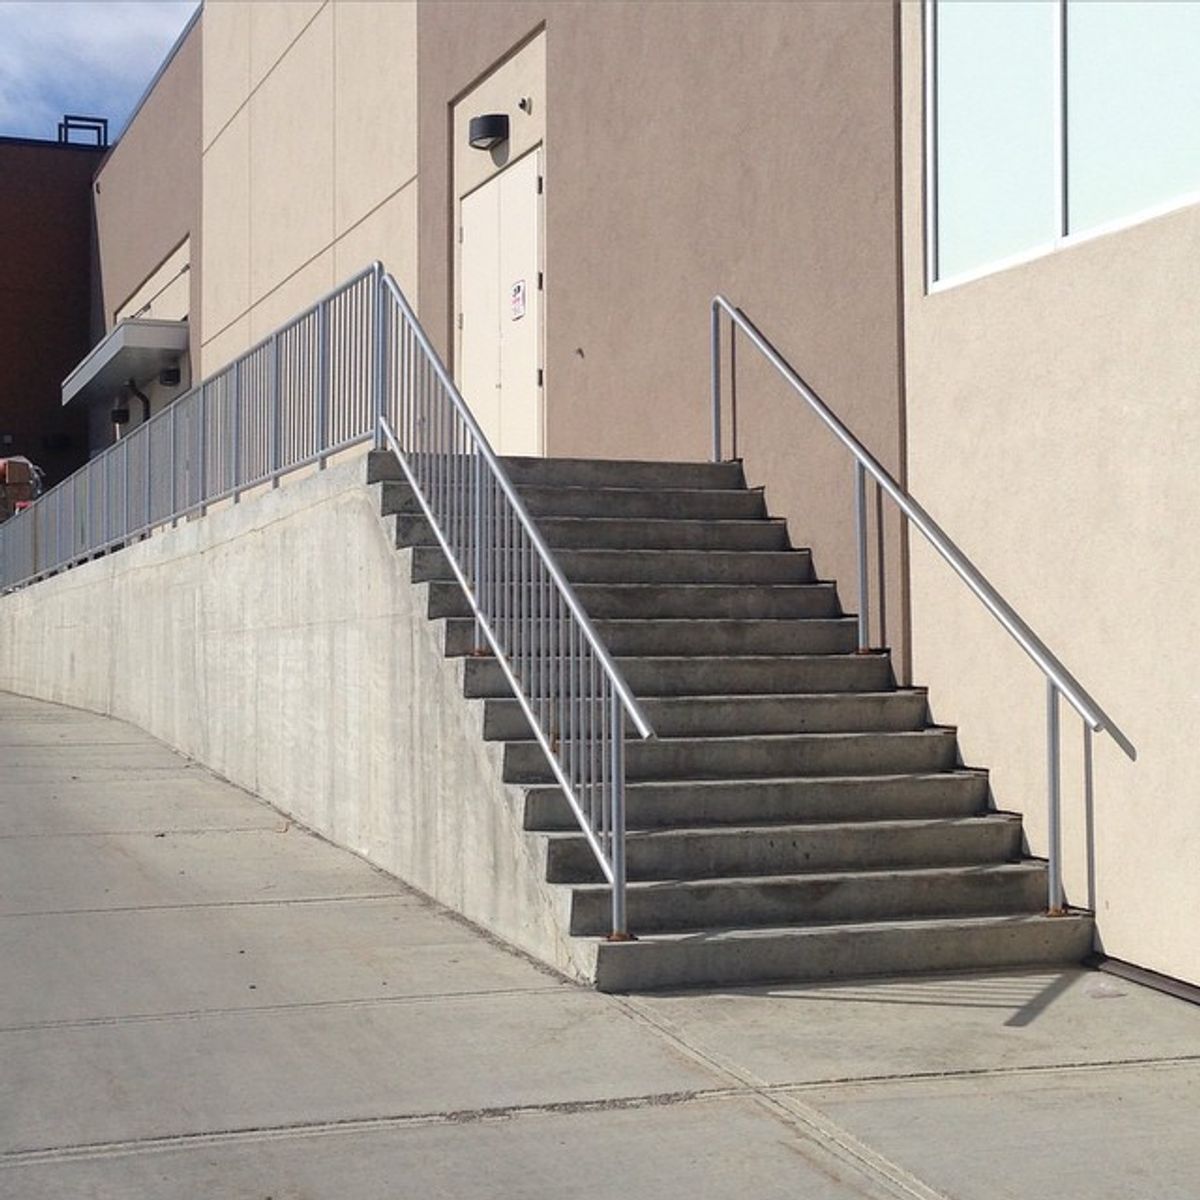 Image for skate spot Beacon Hill - 13 Stair Rail